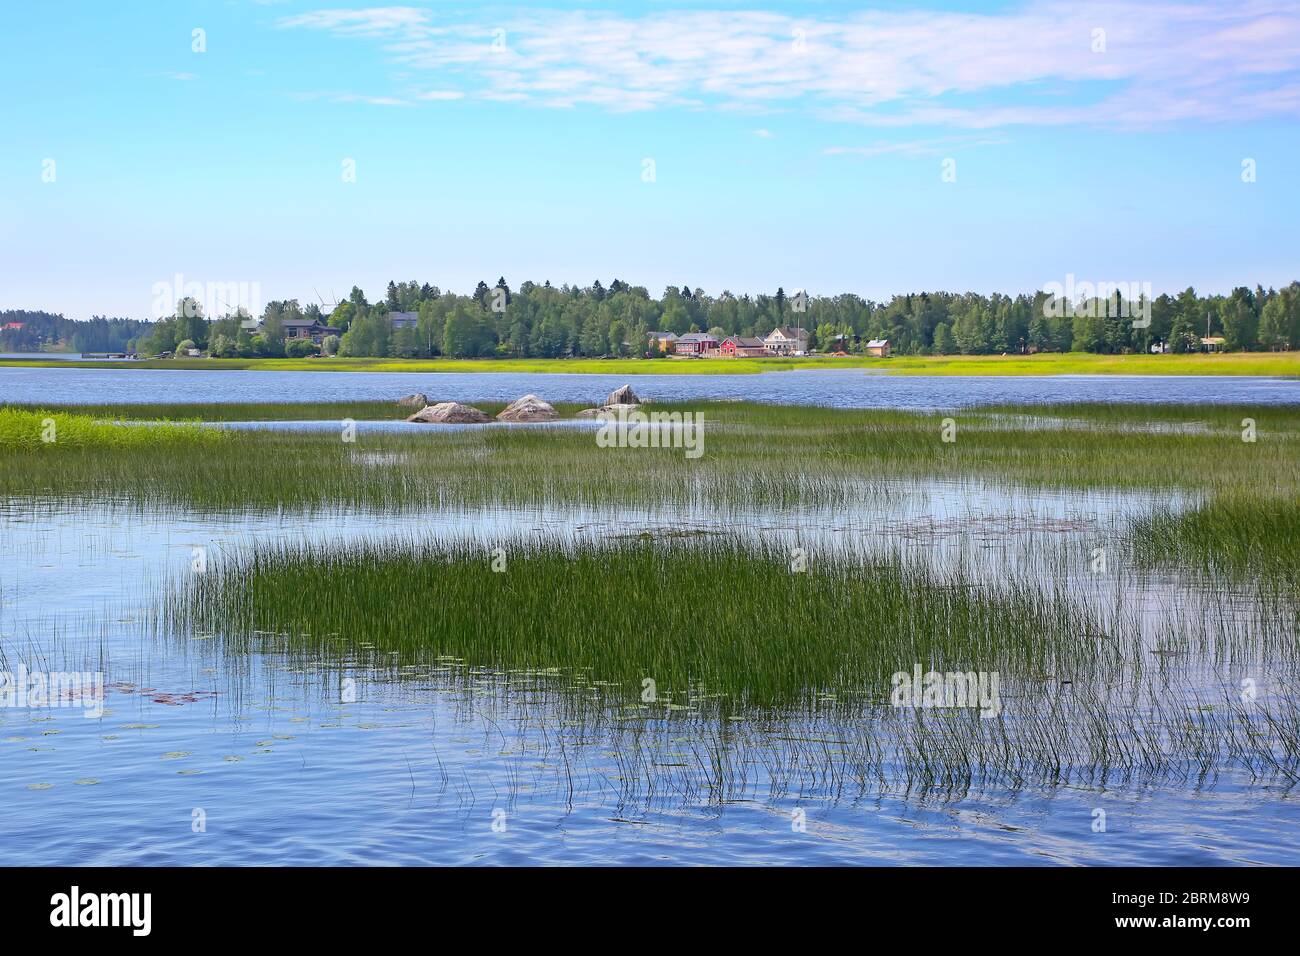 Schöne Landschaft mit Schilf im Wasser & Dörfchenam Flussufer des Kymi Flusses, in der Nähe von Kotka, Finnland. Stockfoto